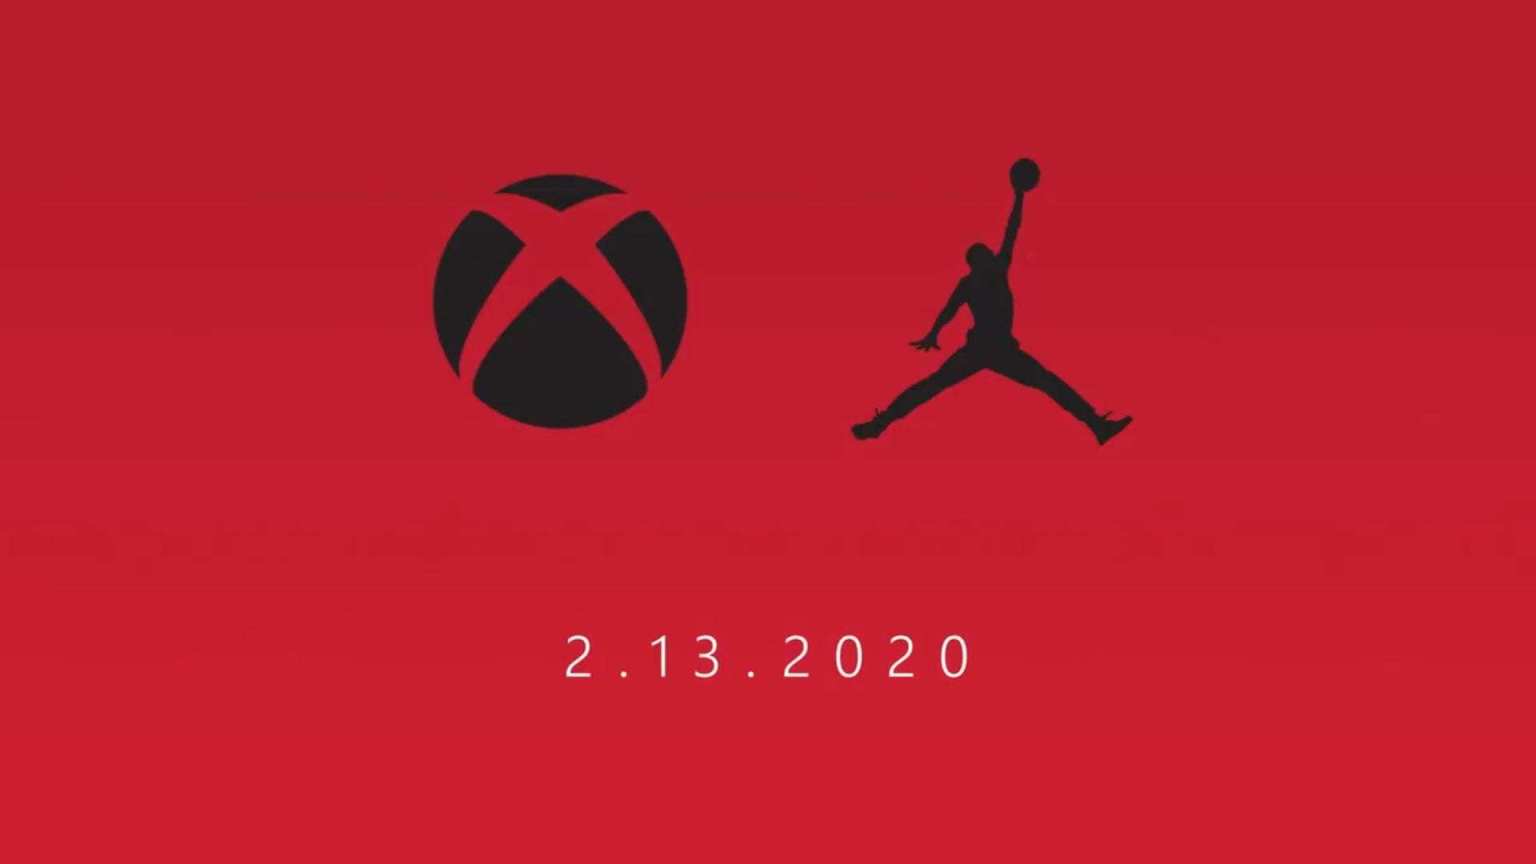 Xbox junto a Nike Air Jordan anuncian colaboración